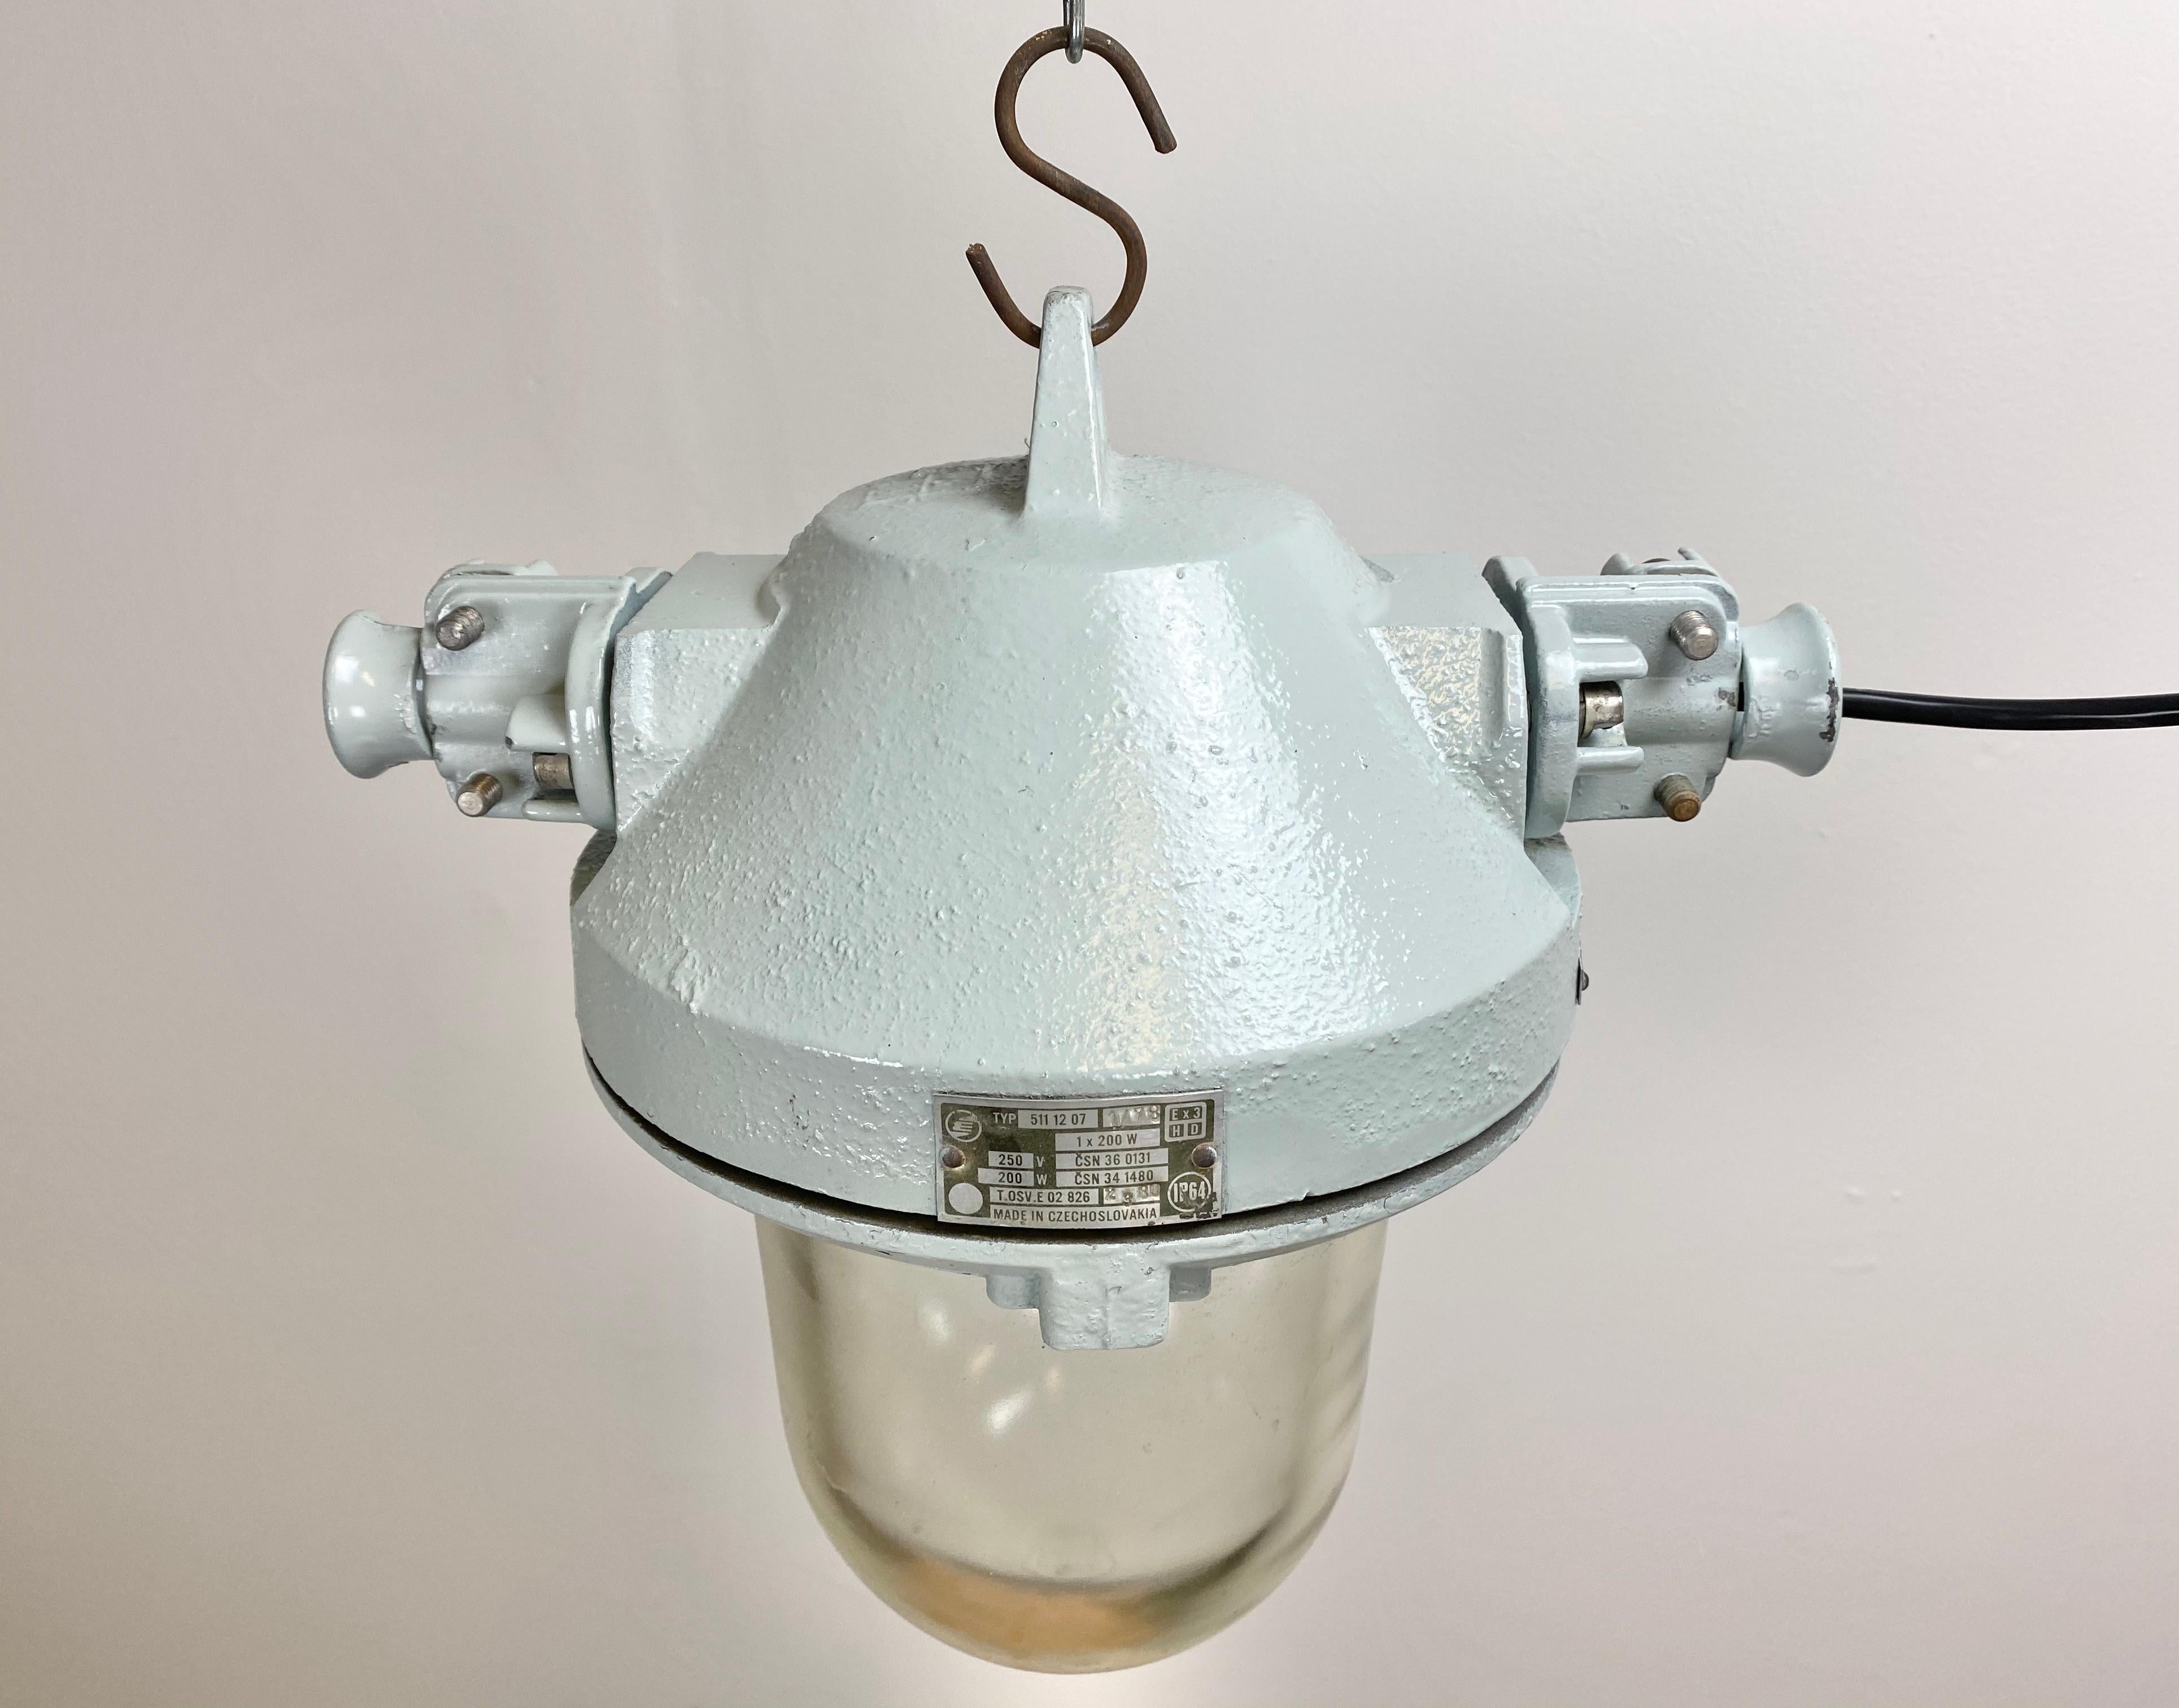 Cette lampe industrielle a été fabriquée par Elektrosvit dans l'ancienne Tchécoslovaquie au cours des années 1970. La lampe a un corps en aluminium moulé gris et une ampoule en verre transparent de protection massive. Il est doté d'une douille en